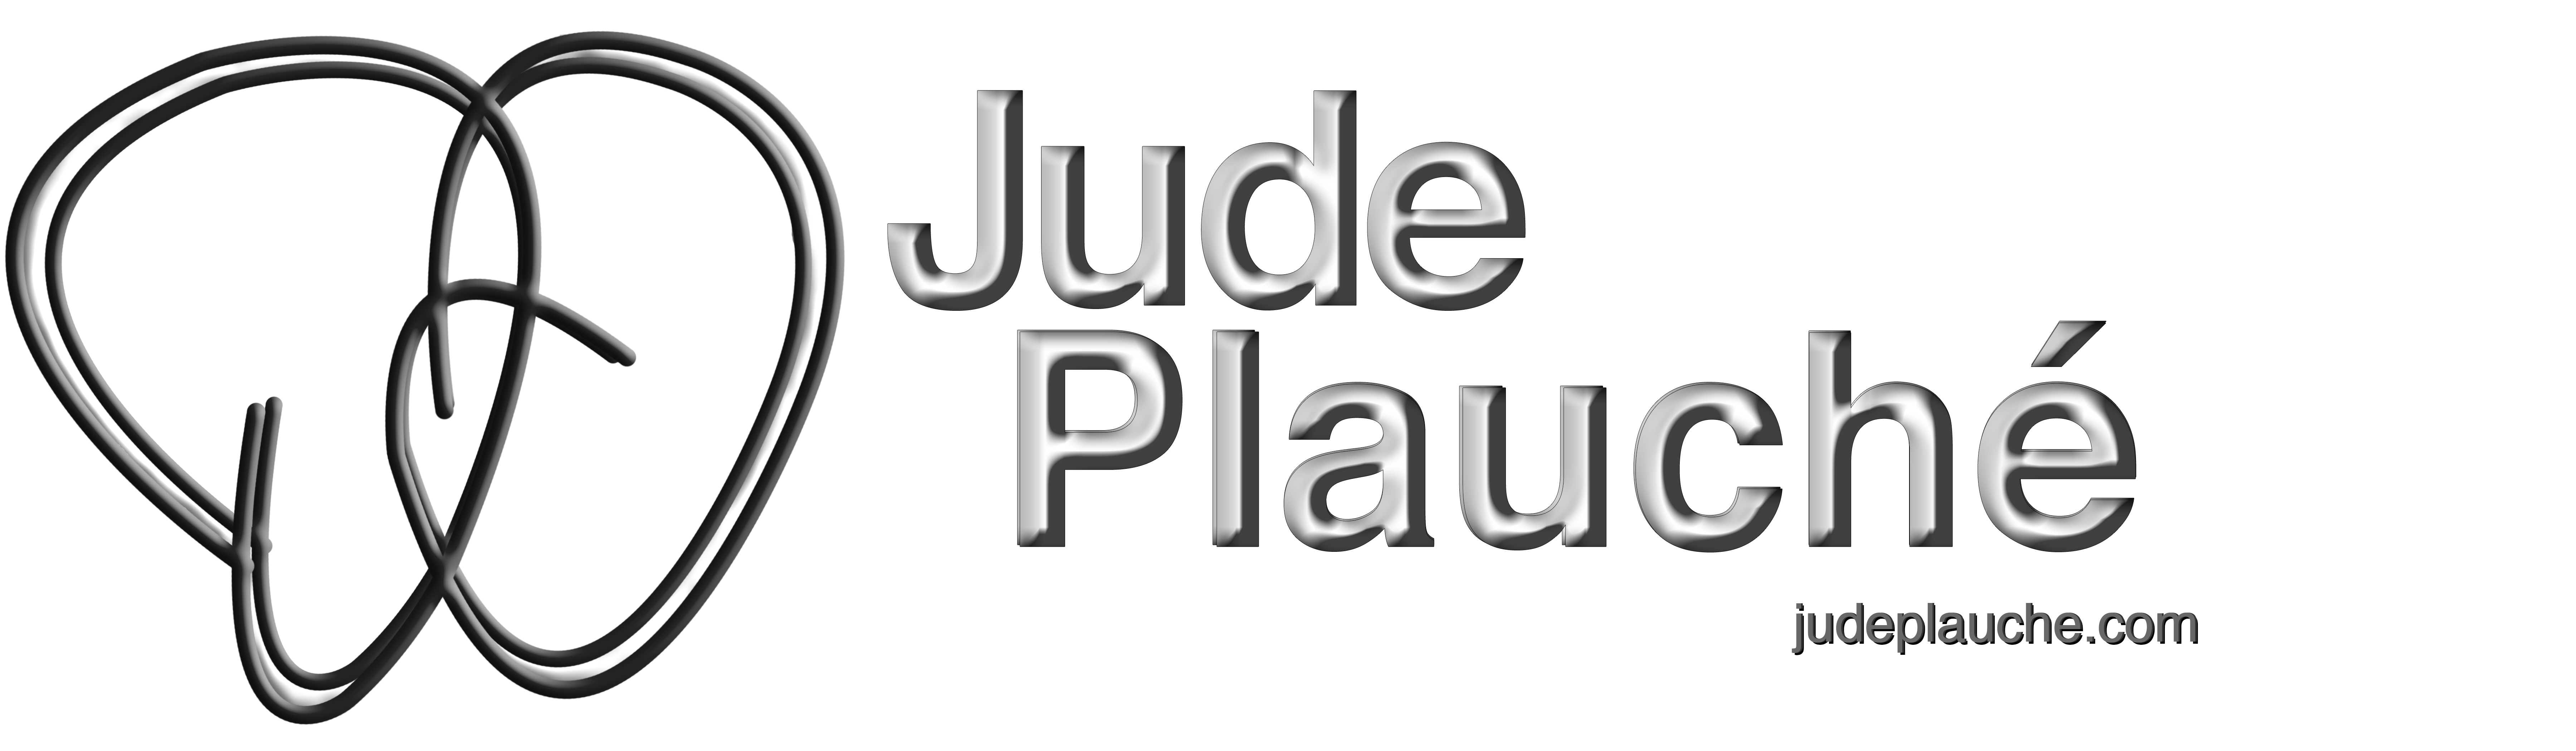 Jude Plauche DesignStratus.com Web Design Designing The Cloud Logo